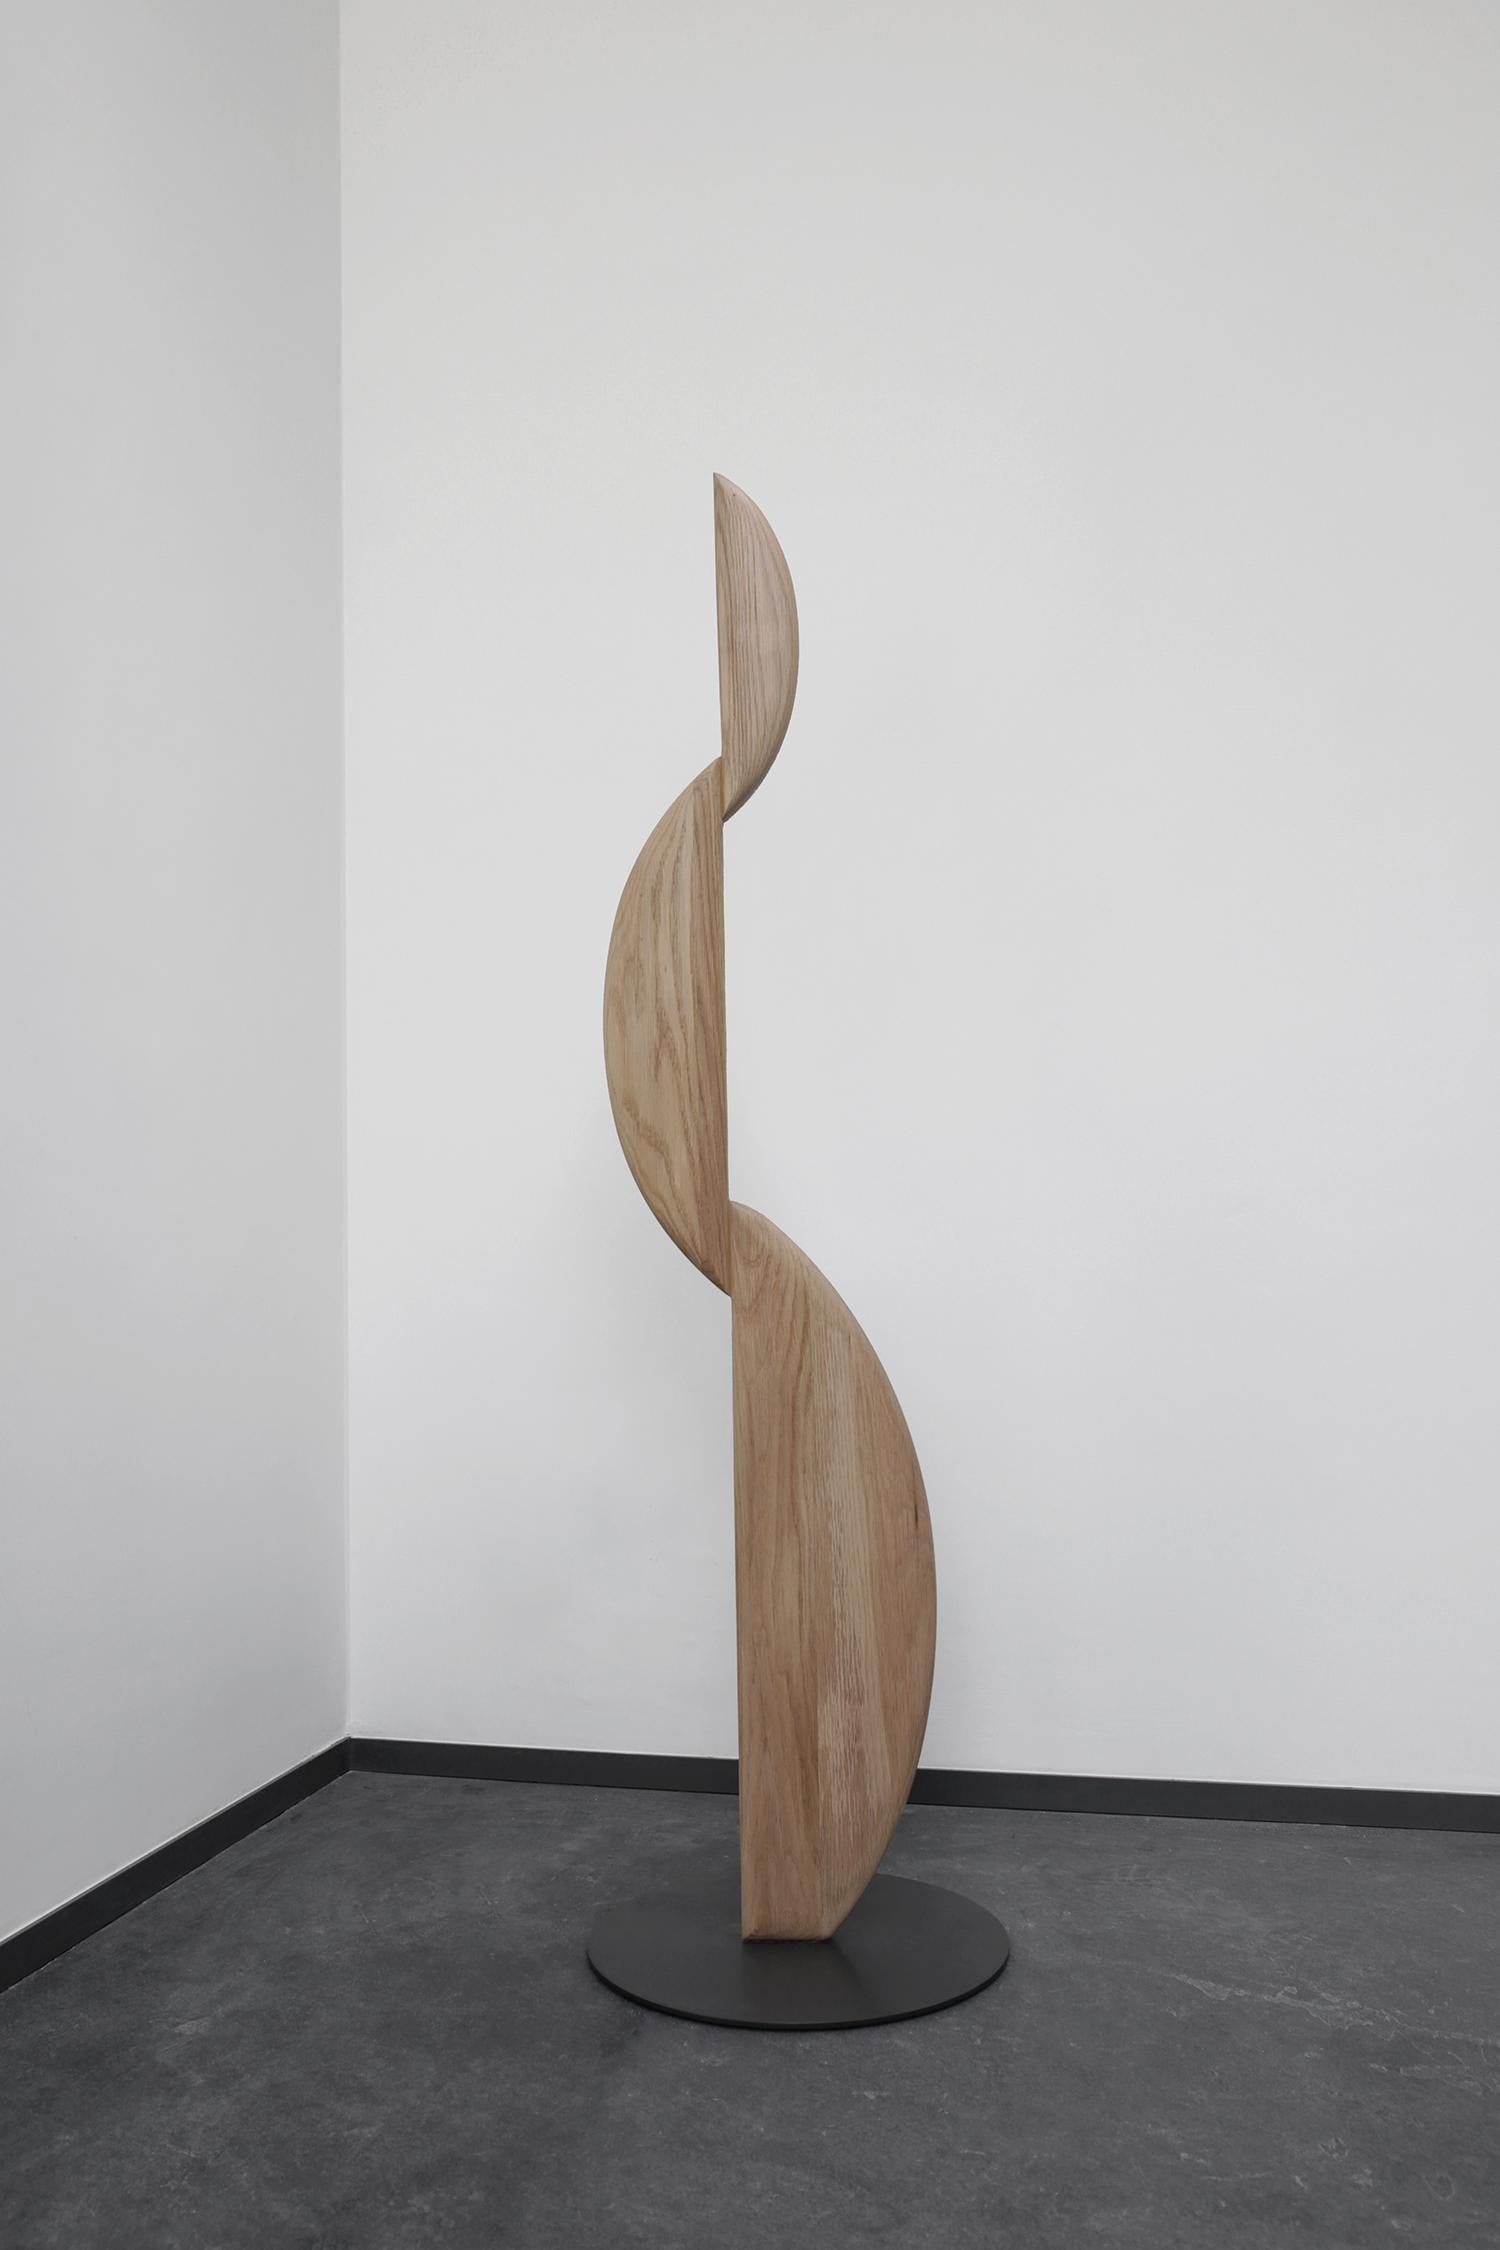 III Tercera Skulptur von Joel Escalona
Abmessungen: T 45 x B 45 x H 160 cm
MATERIAL: Eichenholz, Metall.
Auch in gebrannter Ausführung erhältlich.

Skulptur aus Weißeiche oder Weißeiche natur, wahlweise mit gebrannter Oberfläche und